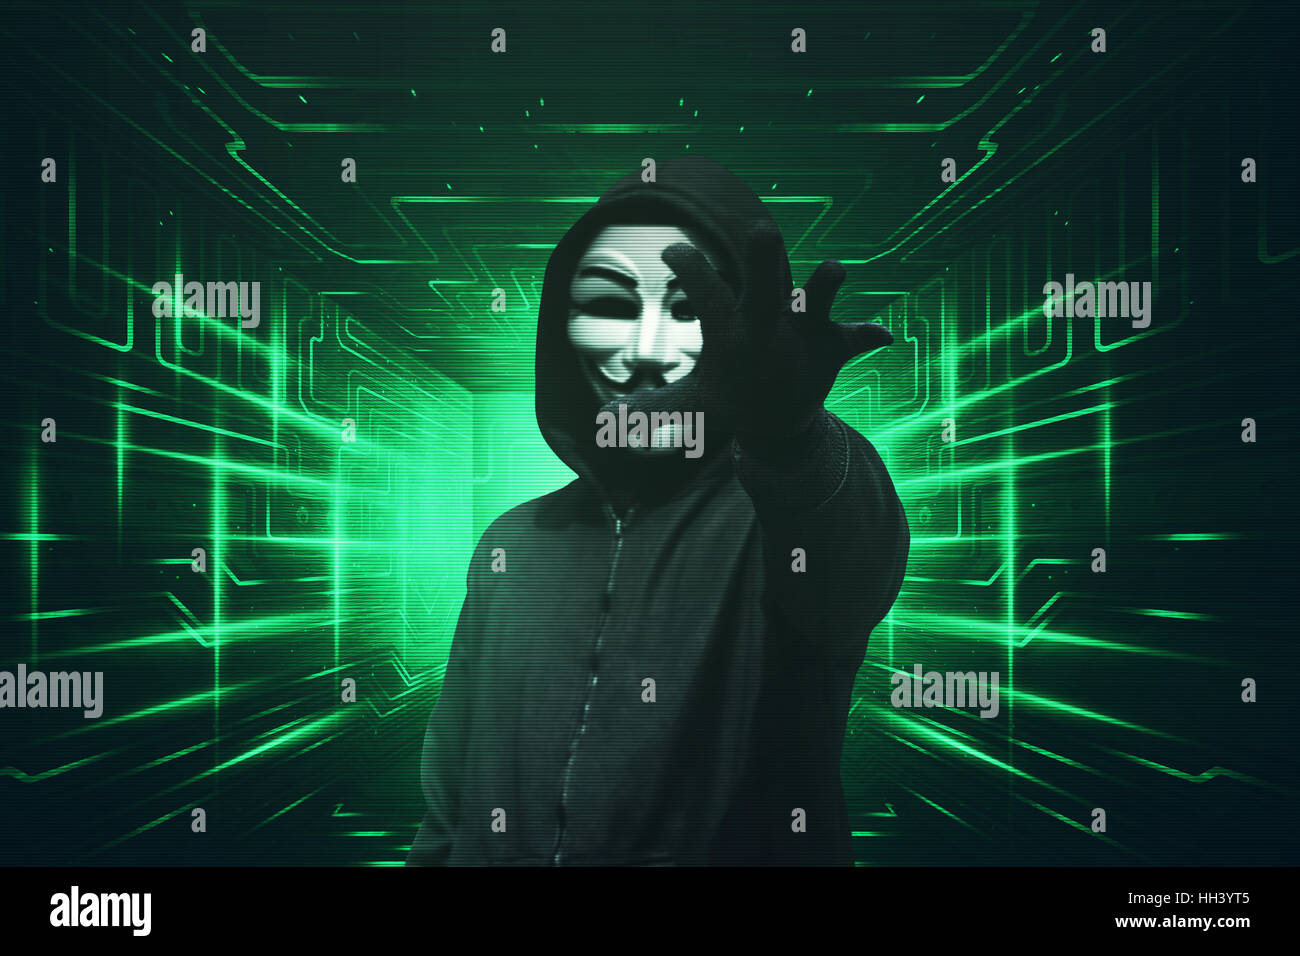 Kapuzen-Hacker mit Maske packte etwas grüne visuellen Hintergrund Stockfoto